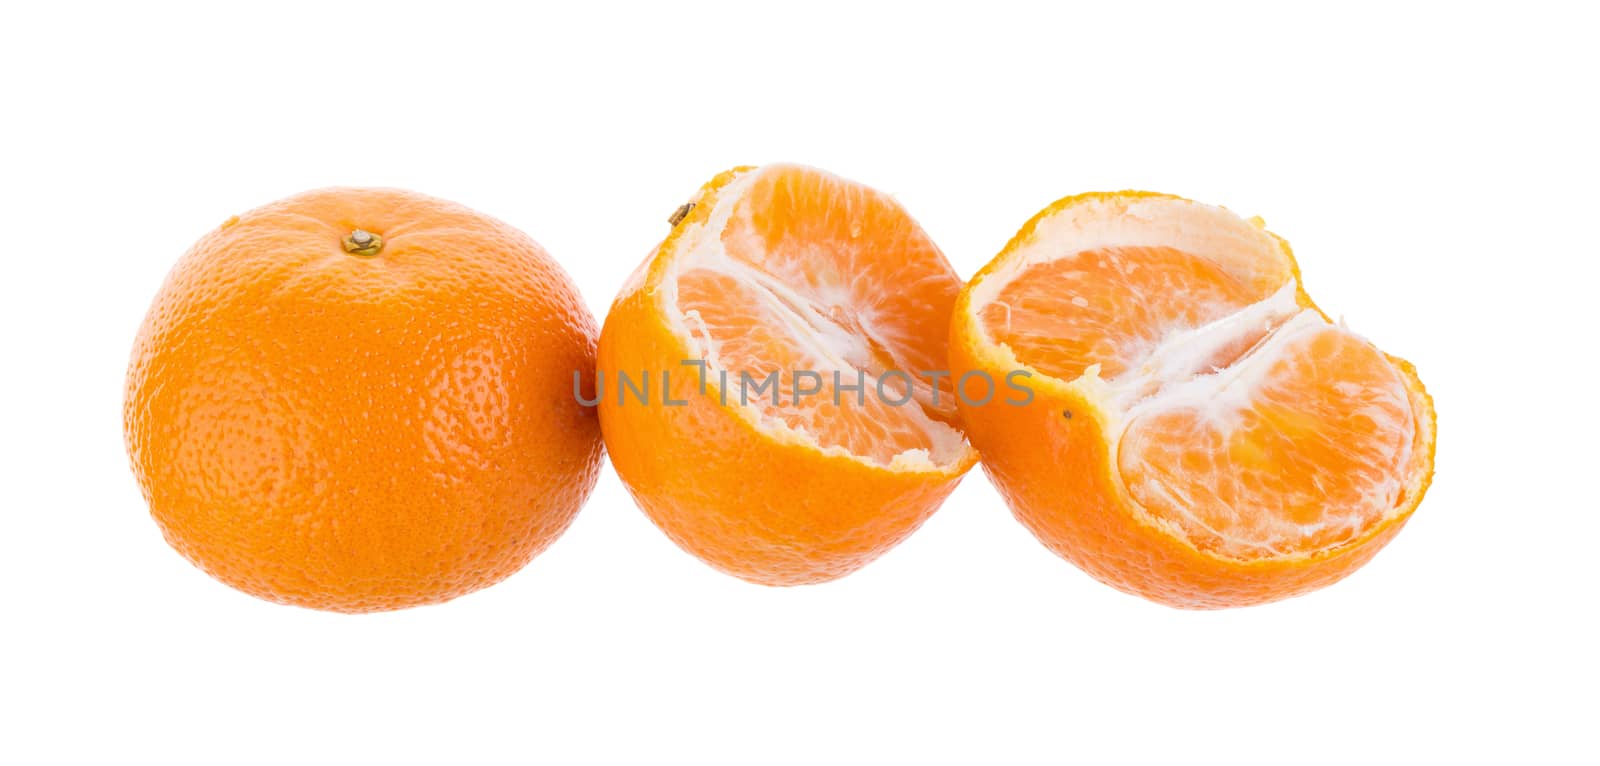 Half orange fruit on white background, fresh and juicy.